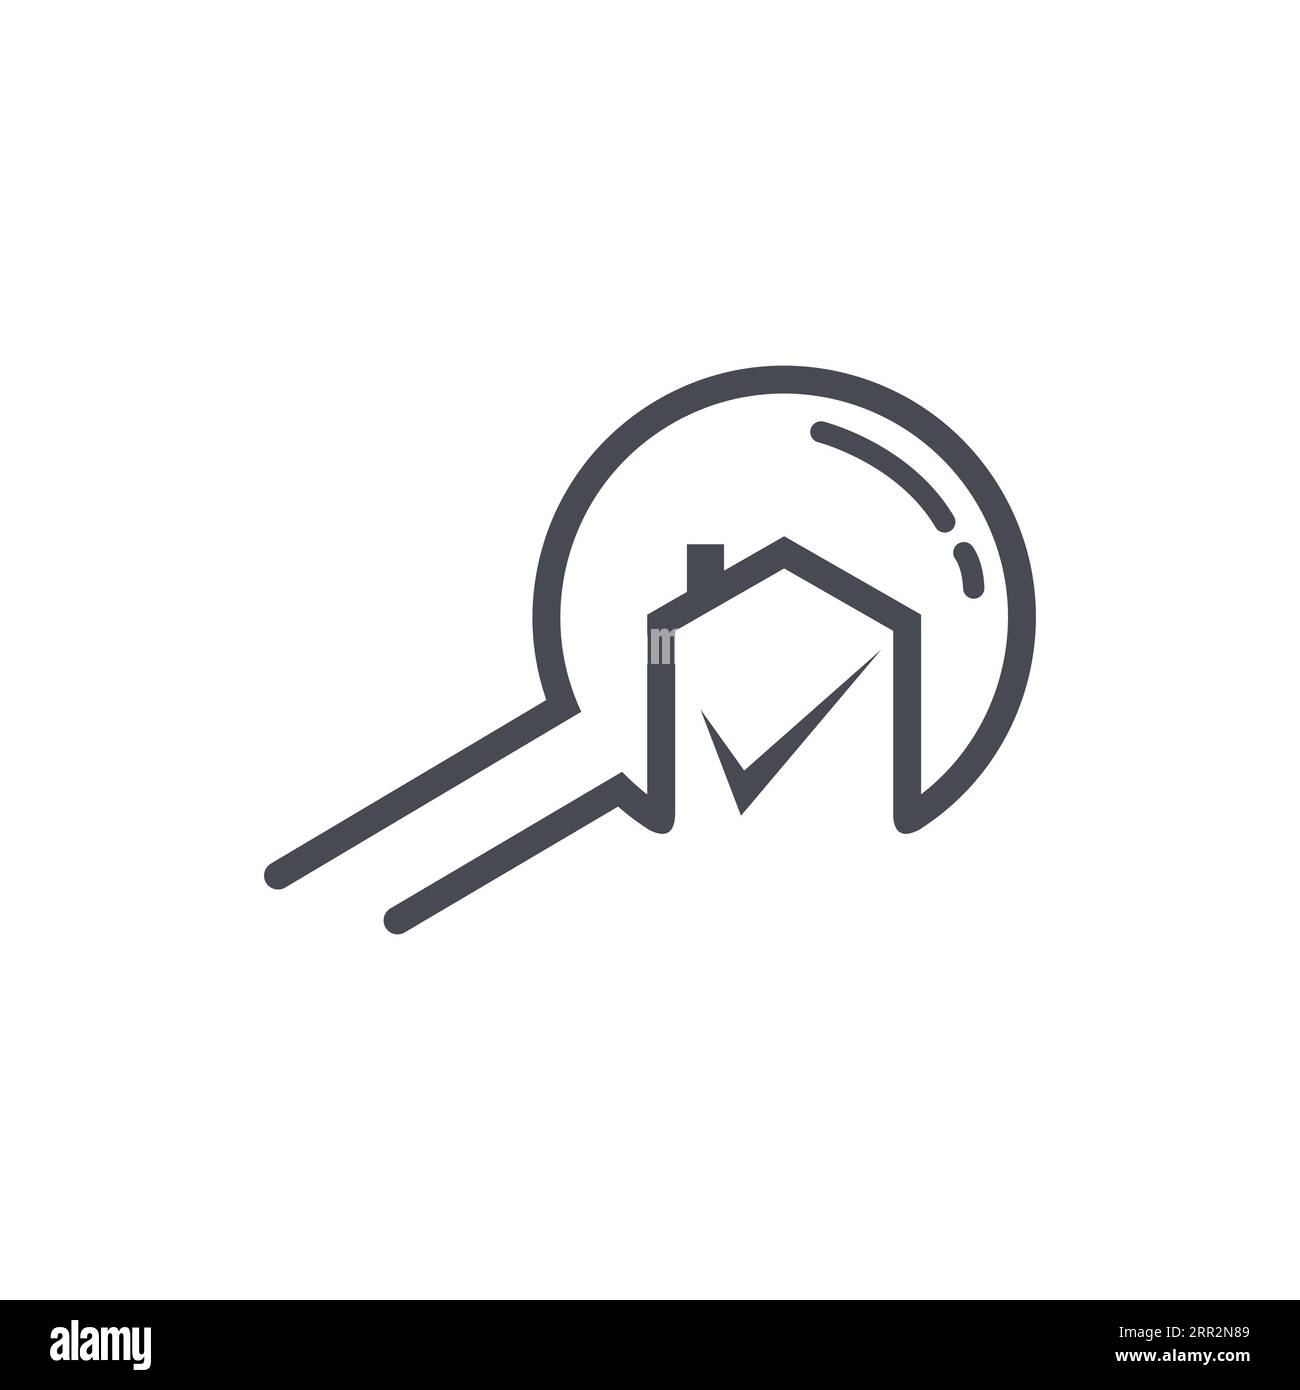 Vektorbild für Design-Vorlage für Home Inspection-Logo. Illustration Vektorgrafik der Logo-Design-Vorlage der Hausinspektionsfirma Stock Vektor